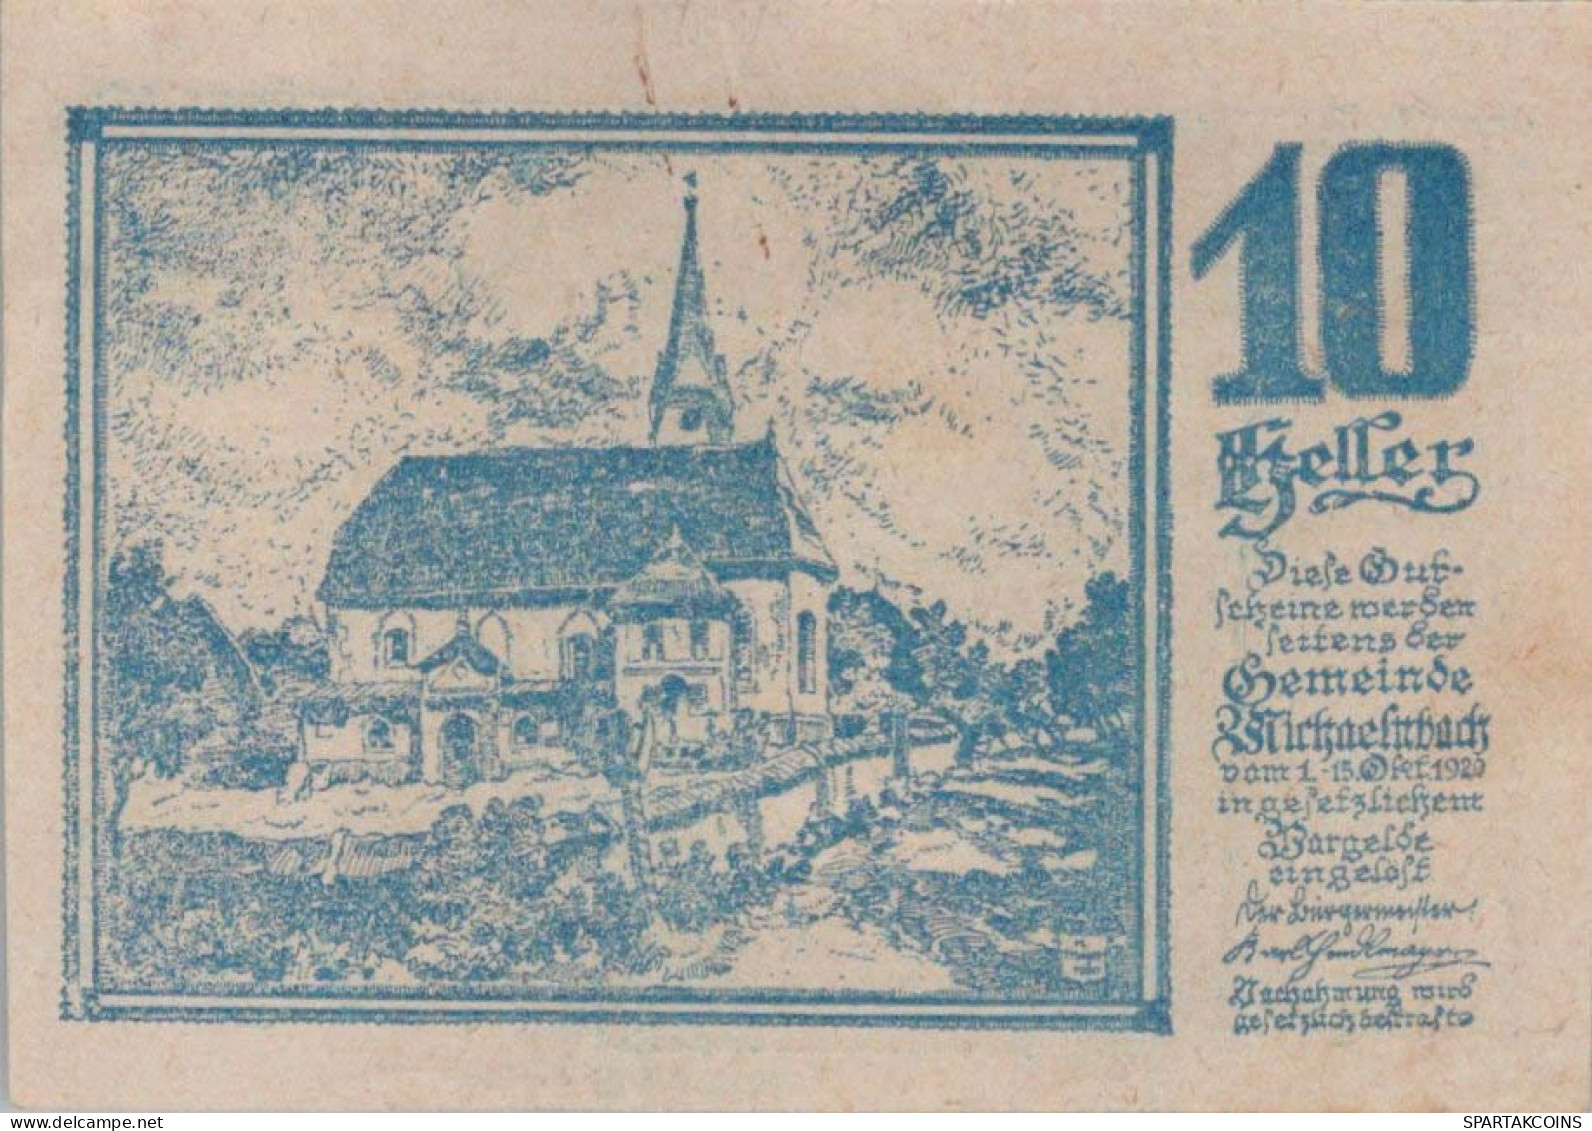 10 HELLER 1920 Stadt MICHAELNBACH Oberösterreich Österreich Notgeld #PD799 - [11] Emissioni Locali